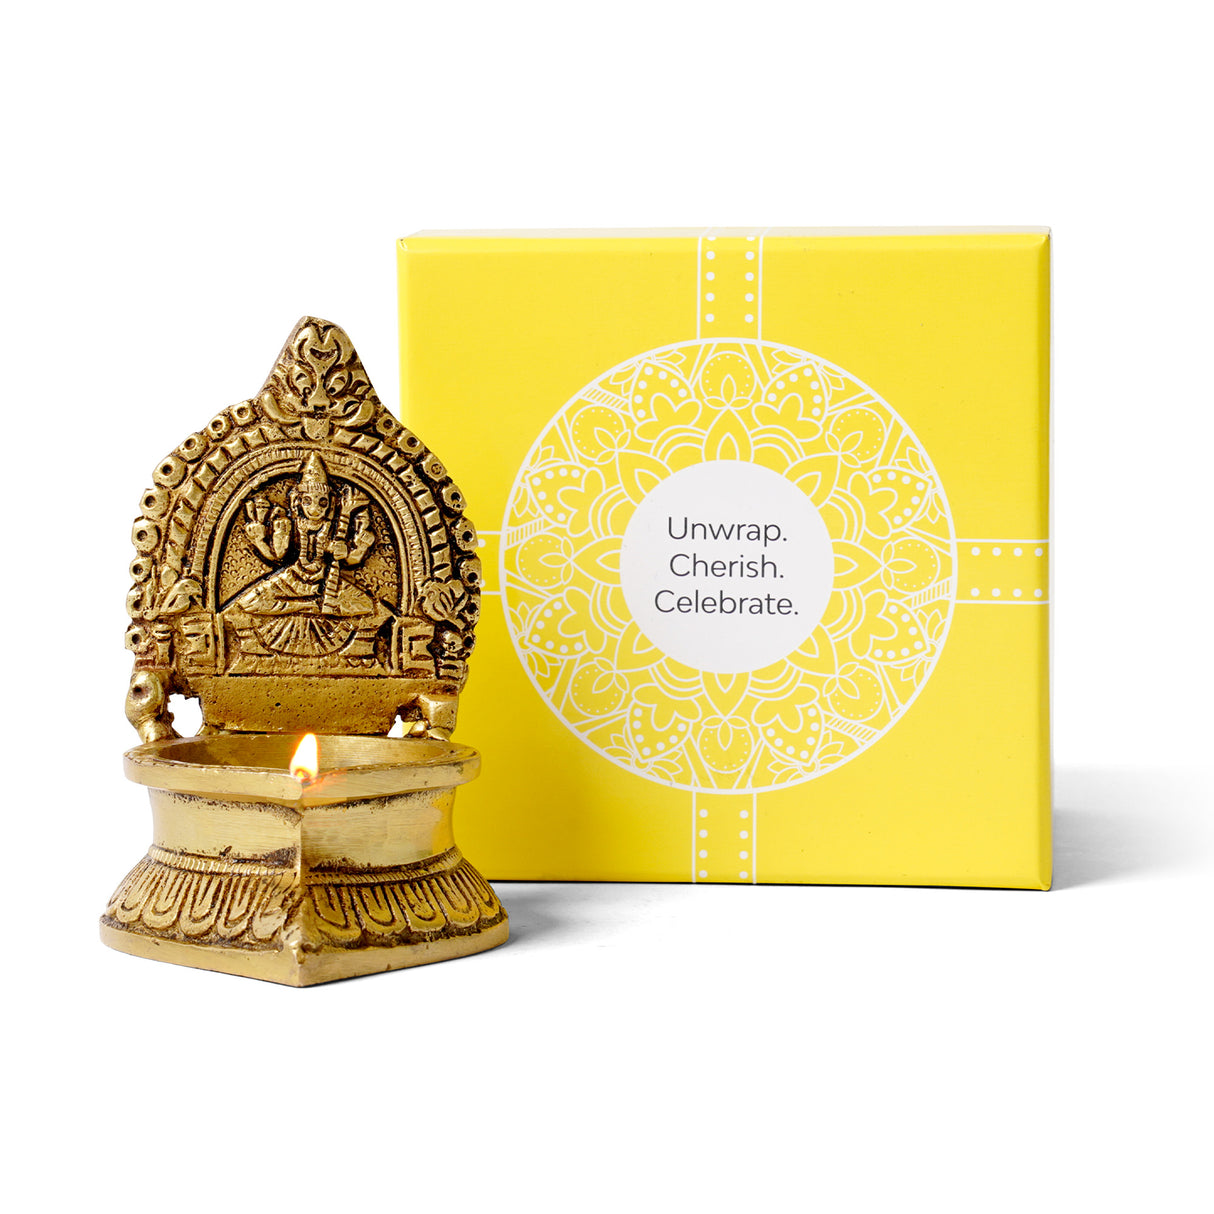 Kamakshi Diya Gift Box